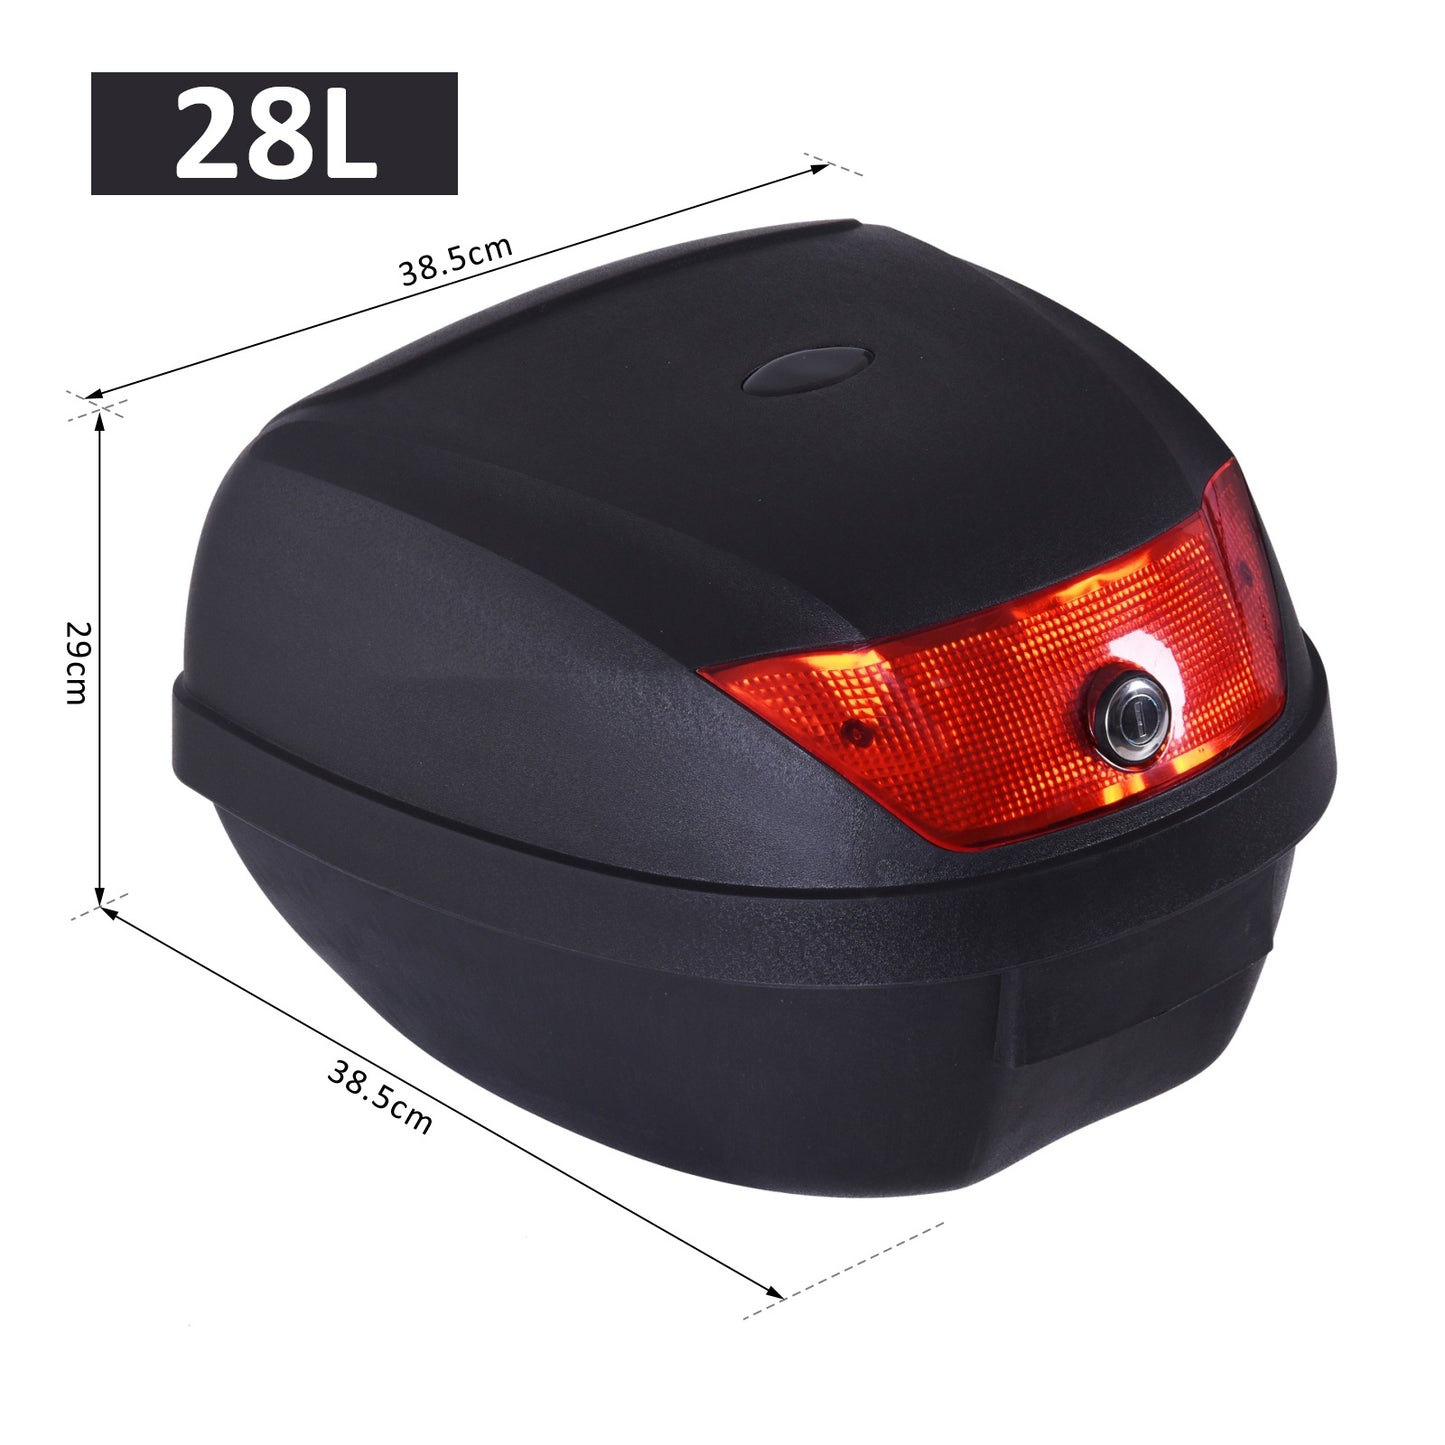 HOMCOM 28L Motorcycle Tail Box W/ 2 Keys-Black/Red